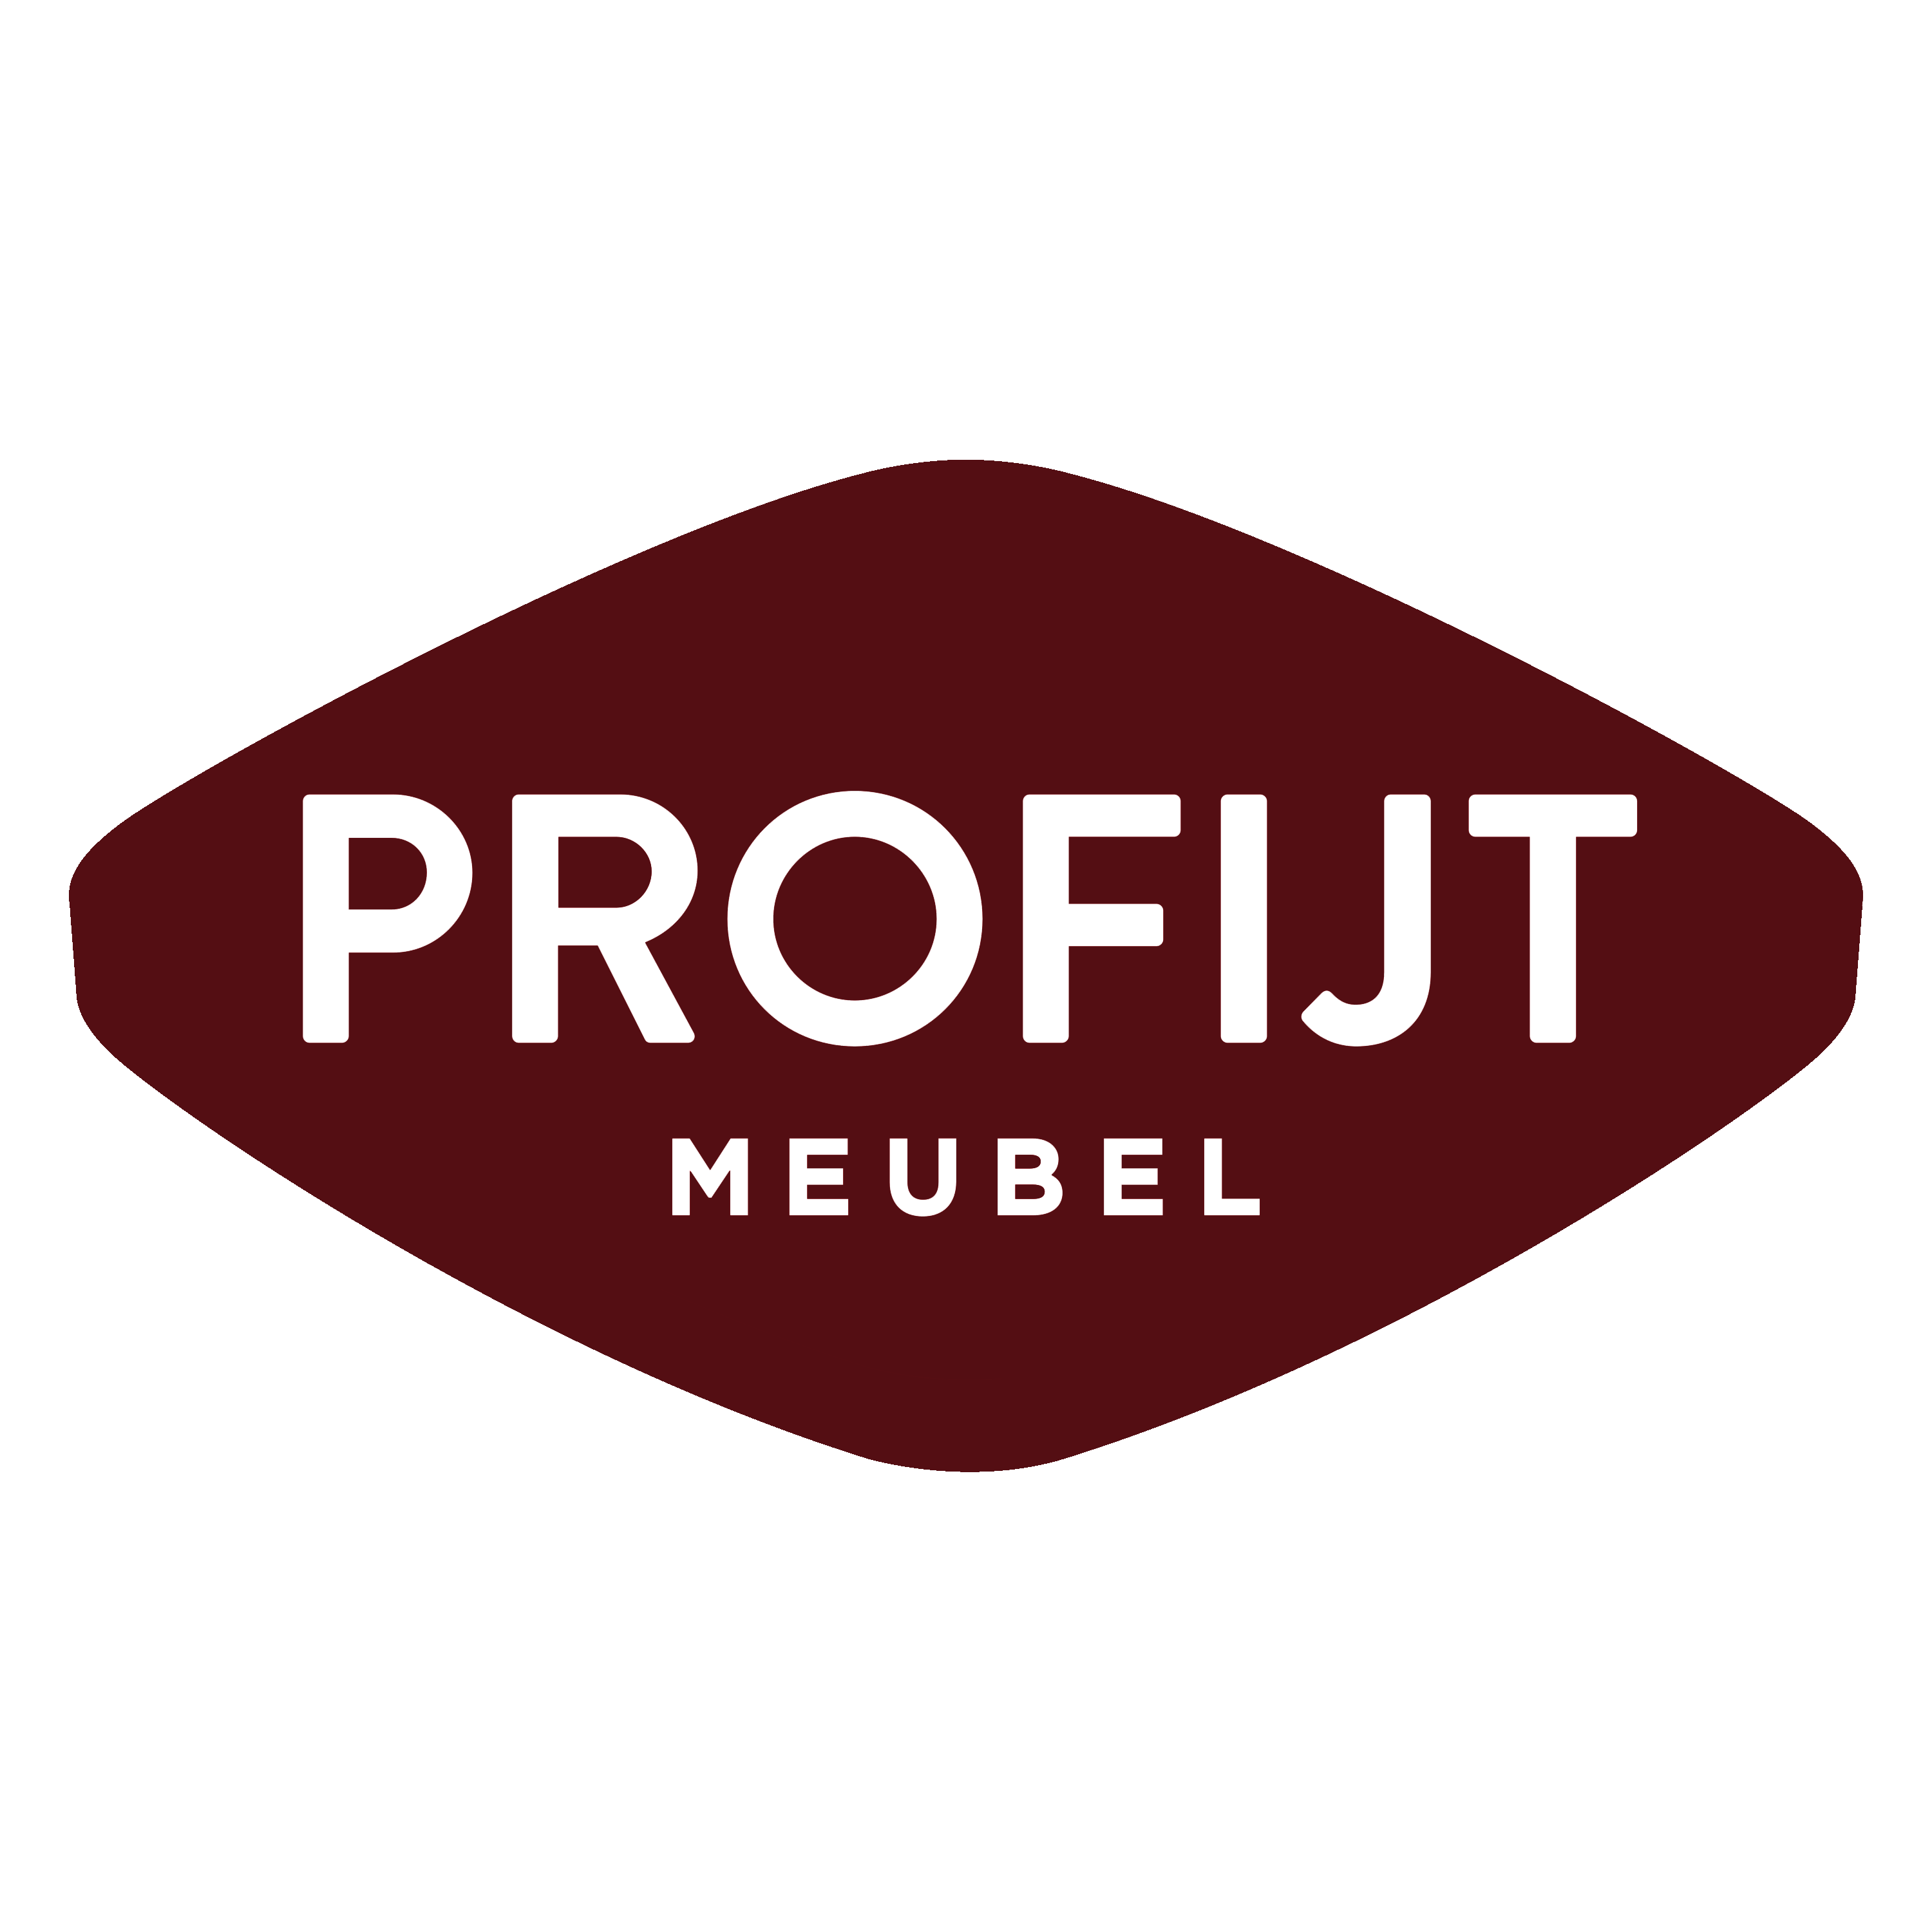 Profijt Meubel Logo  Transparent Gallery